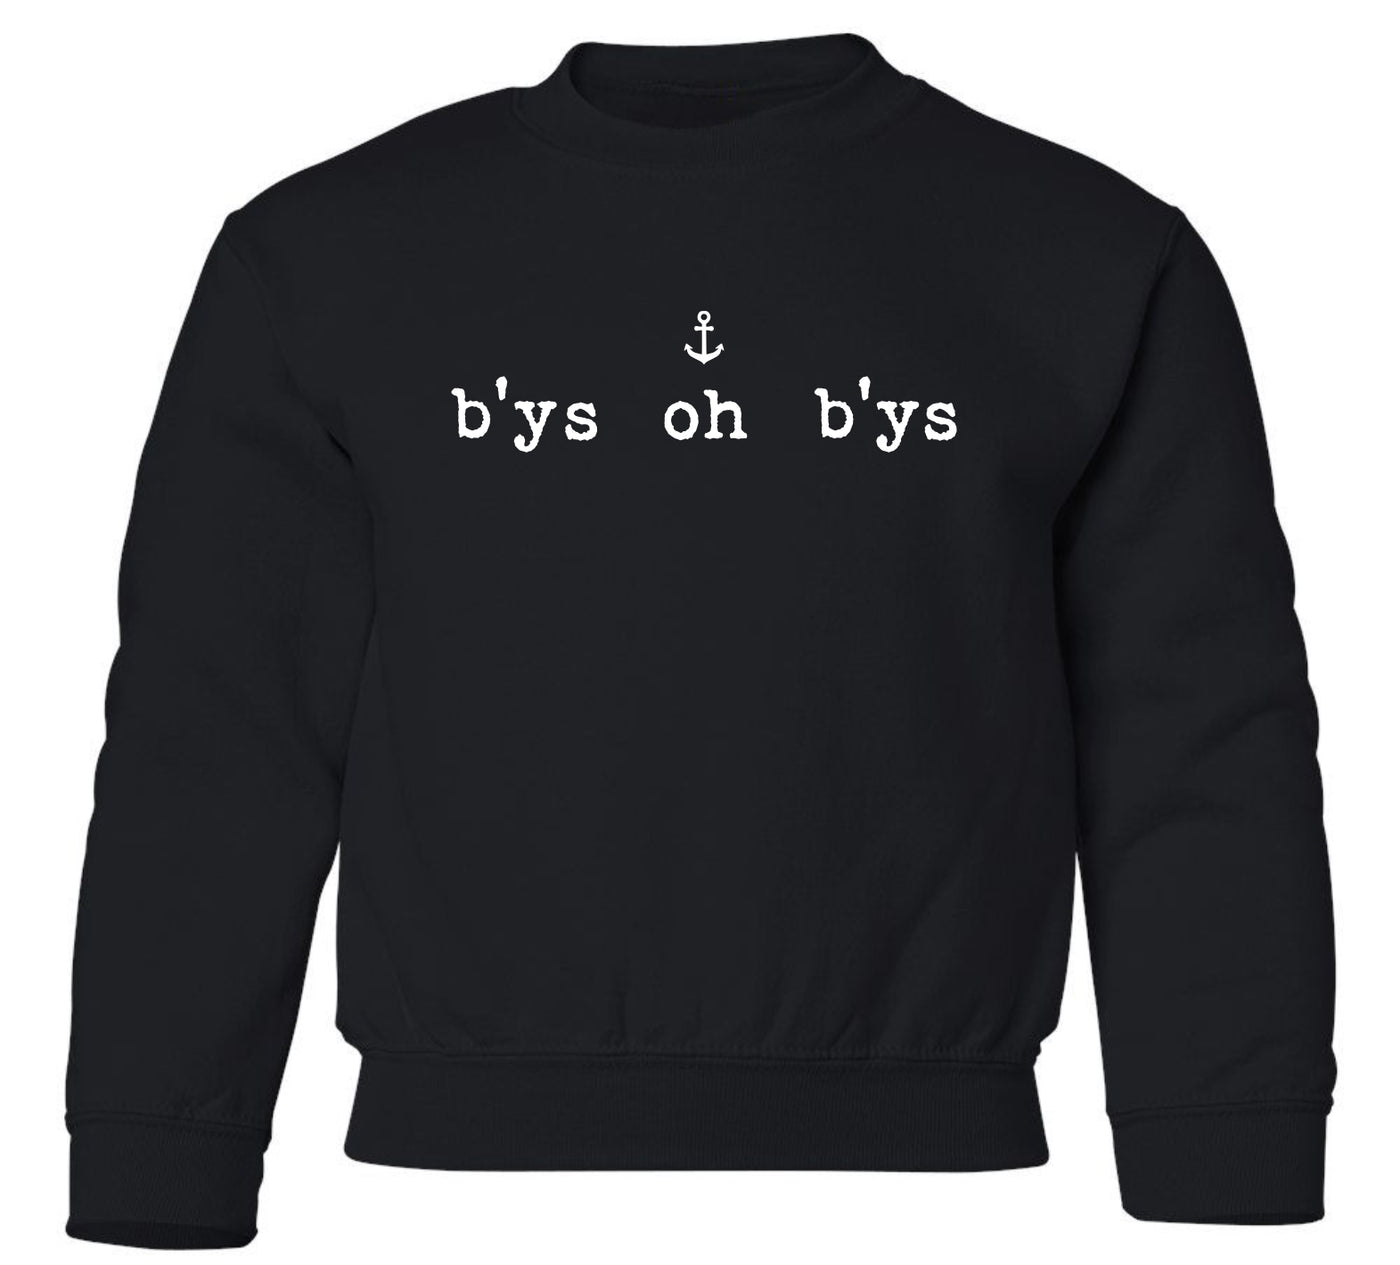 "B'ys Oh B'ys" Toddler/Youth Crewneck Sweatshirt